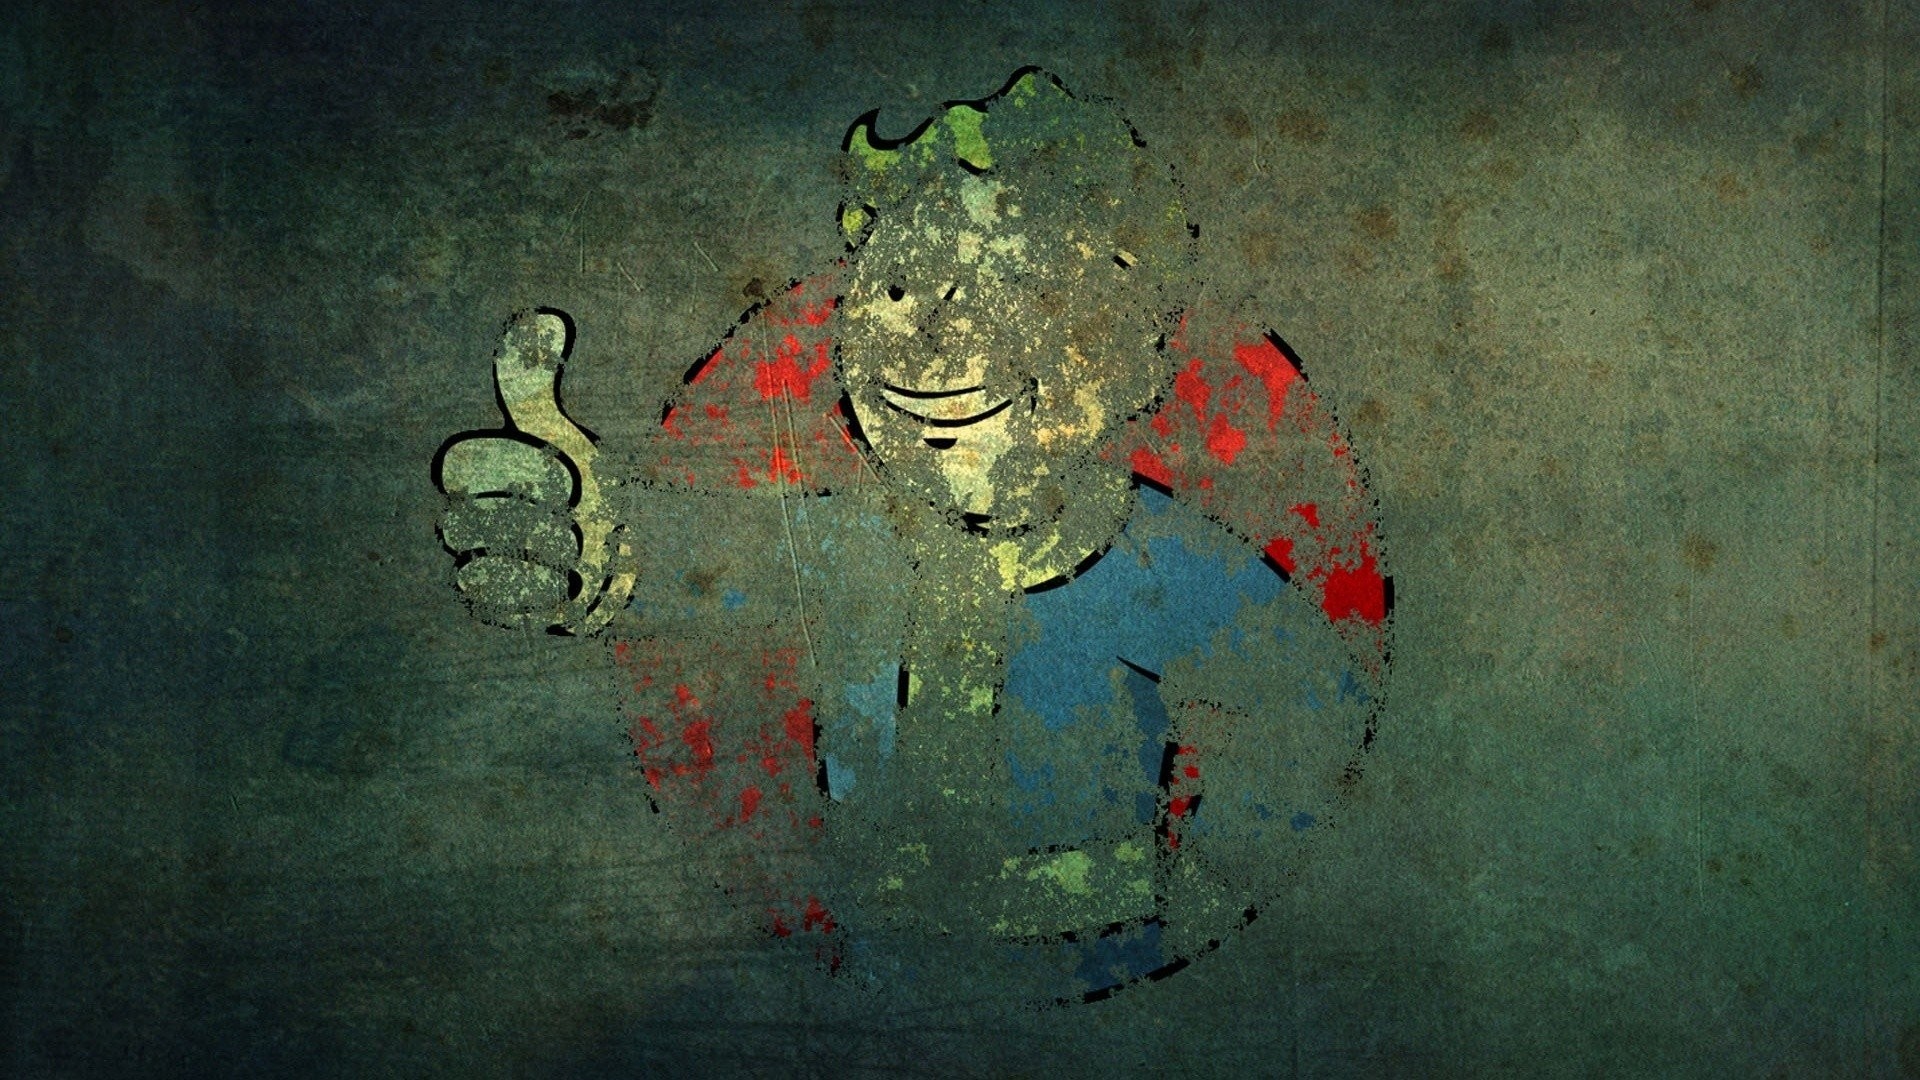 1920x1080 Video games Fallout grunge Vault Boy wallpaper |  | 341067 |  WallpaperUP